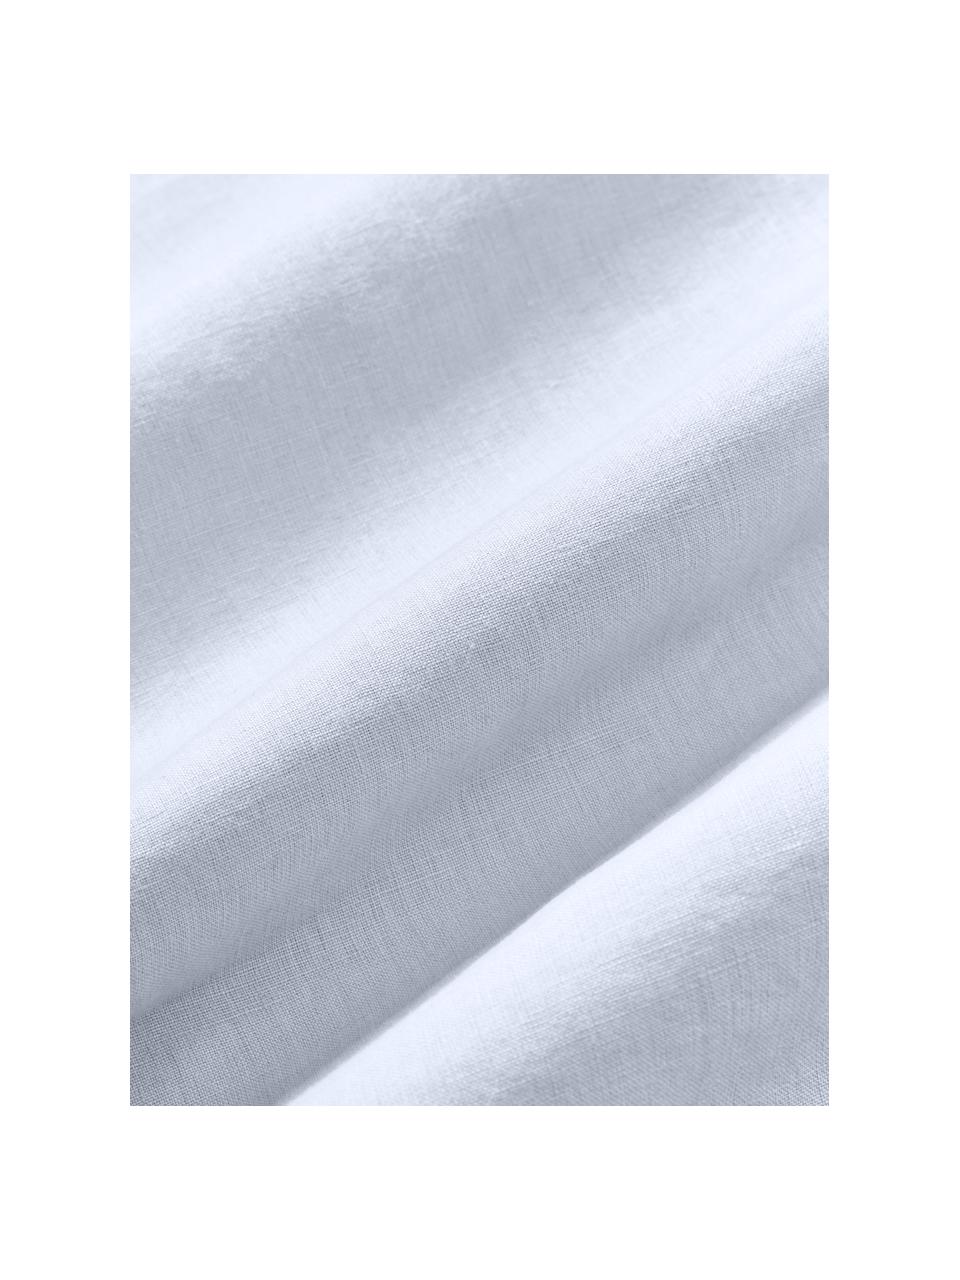 Gewassen linnen laken Airy, 100% linnen, European Flax gecertificeerd
Draaddichtheid 110 TC, standard kwaliteit

Linnen is een natuurlijke vezel die wordt gekenmerkt door ademend vermogen, duurzaamheid en zachtheid. Linnen is een verkoelend en absorberend materiaal dat snel vocht opneemt en weer afgeeft, waardoor het ideaal is bij warme temperaturen.

Het materiaal dat in dit product wordt gebruikt, is getest op schadelijke stoffen en gecertificeerd volgens STANDARD 100 by OEKO-TEX®, 6760CIT, CITEVE., Lichtblauw, B 240 x L 280 cm